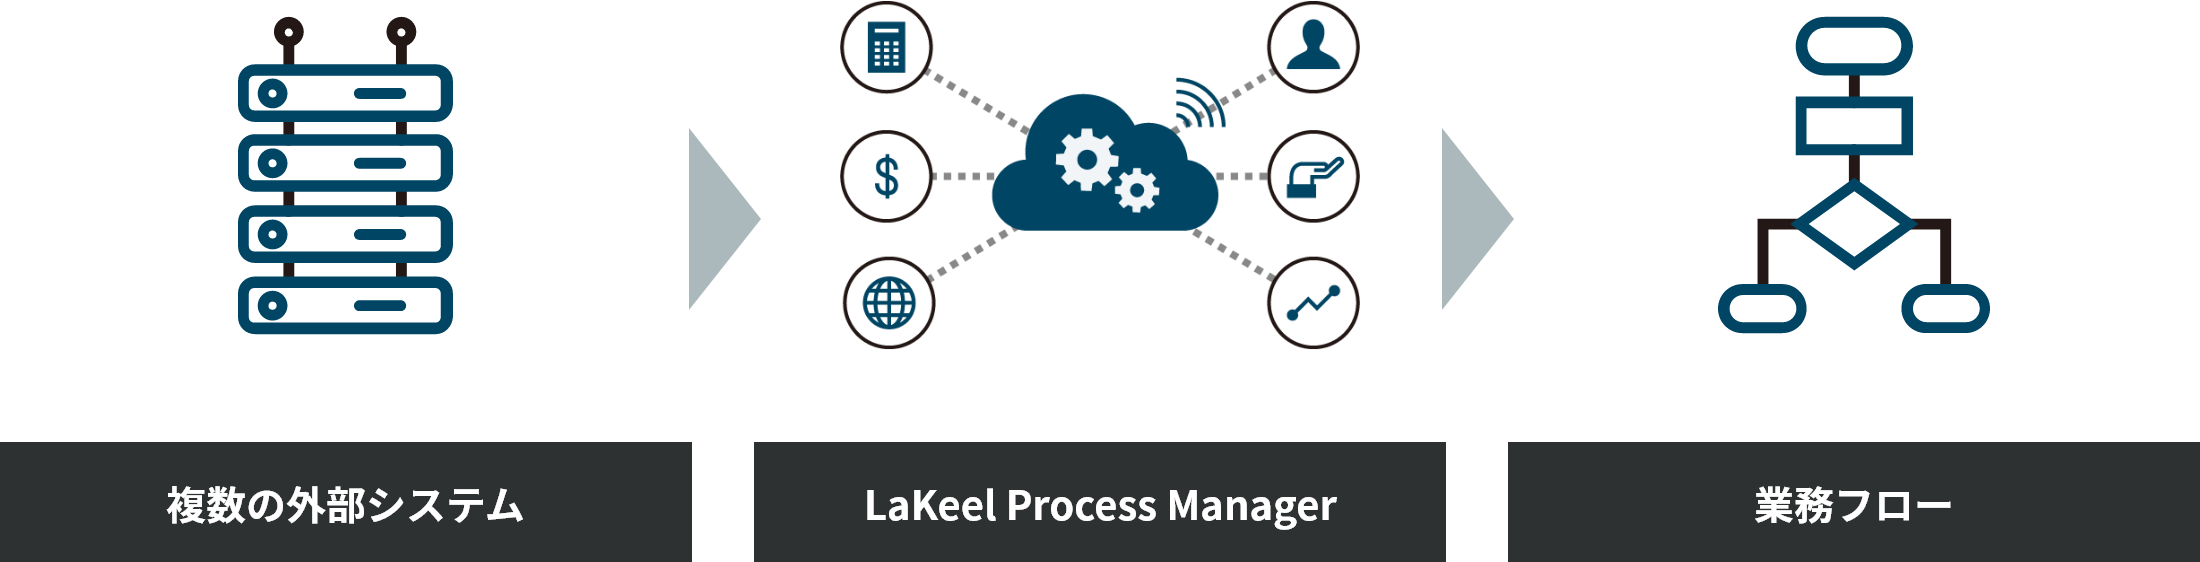 LaKeel Process Managerが実現できること